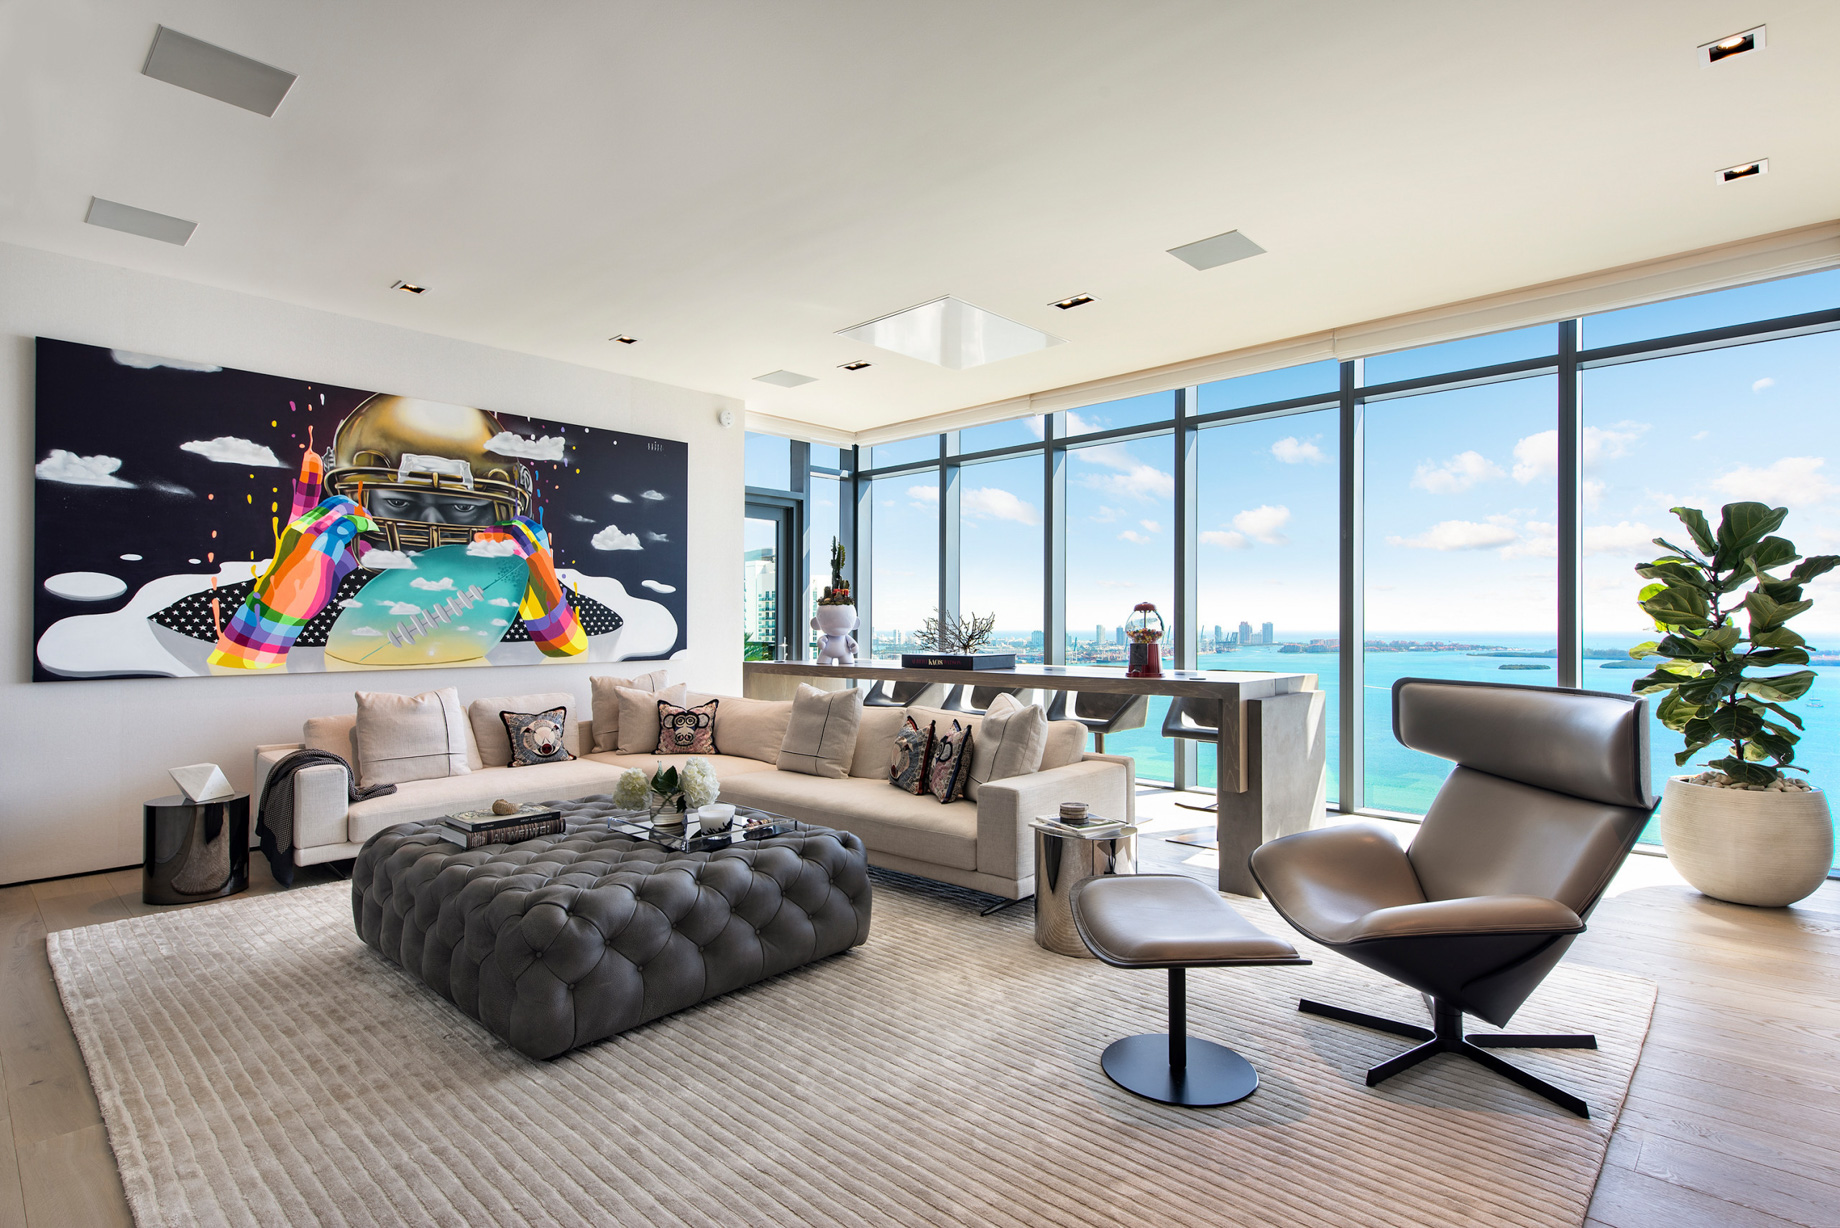 Echo Brickell Apartment Interior Design Miami, FL, USA - Blanca Wall